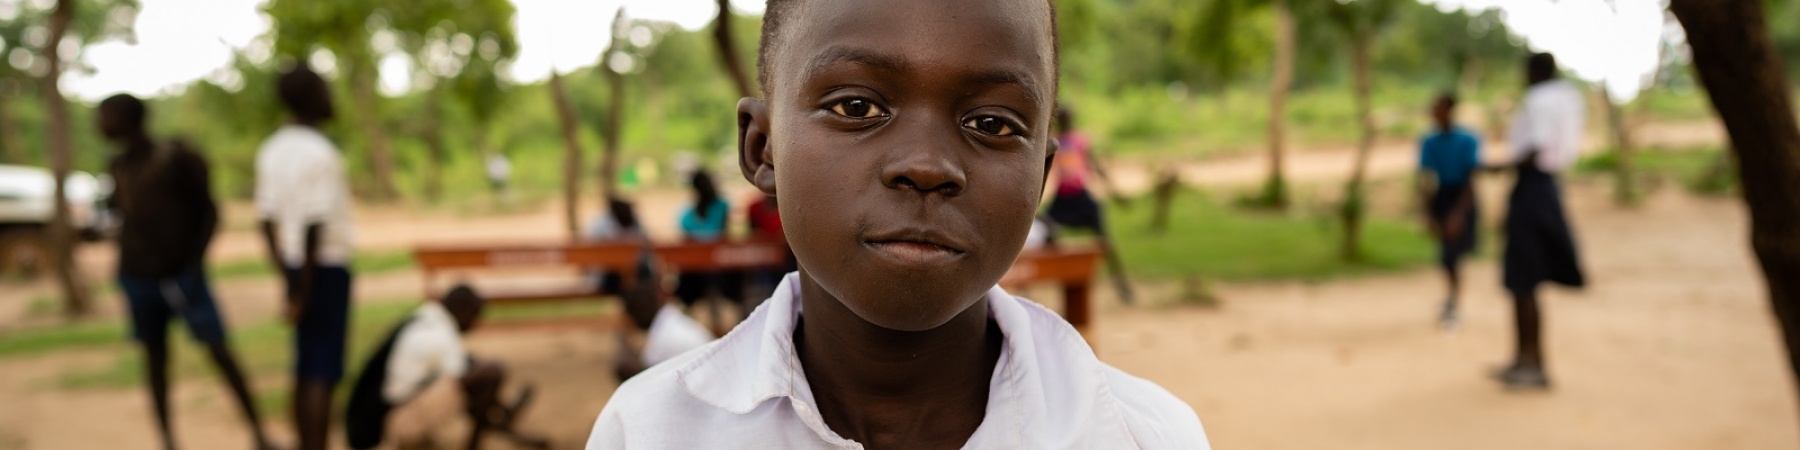 Bambino africano con divisa della scuola in un campo rifugiati